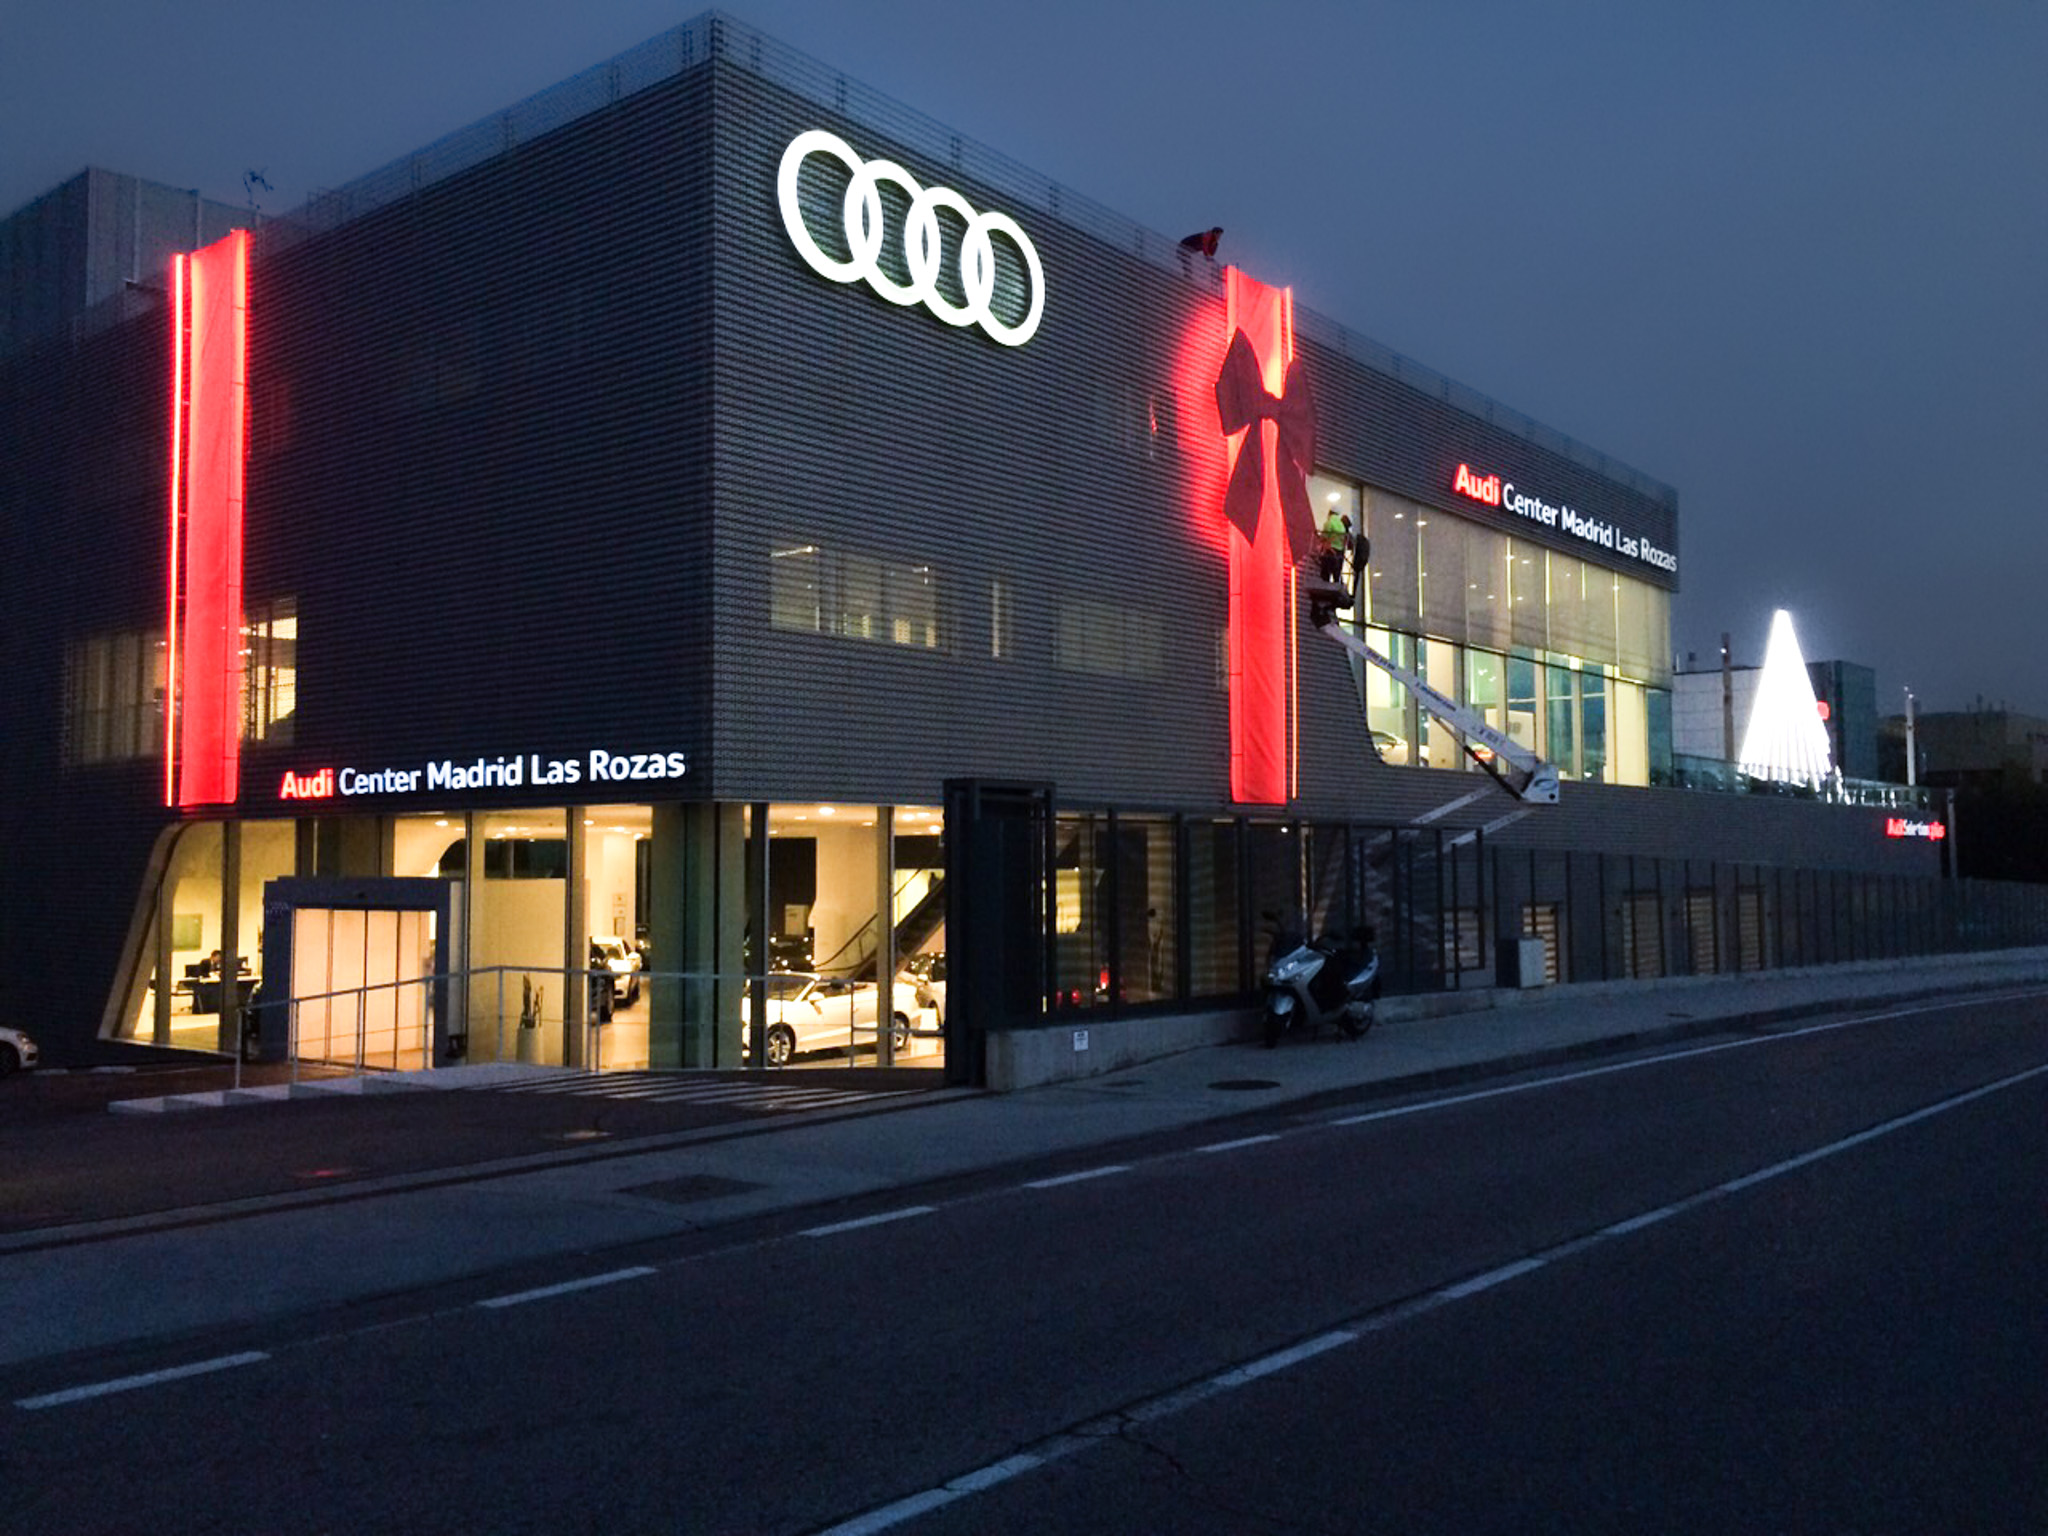 Decoración luminosa Navidad concesionario Audi Madrid